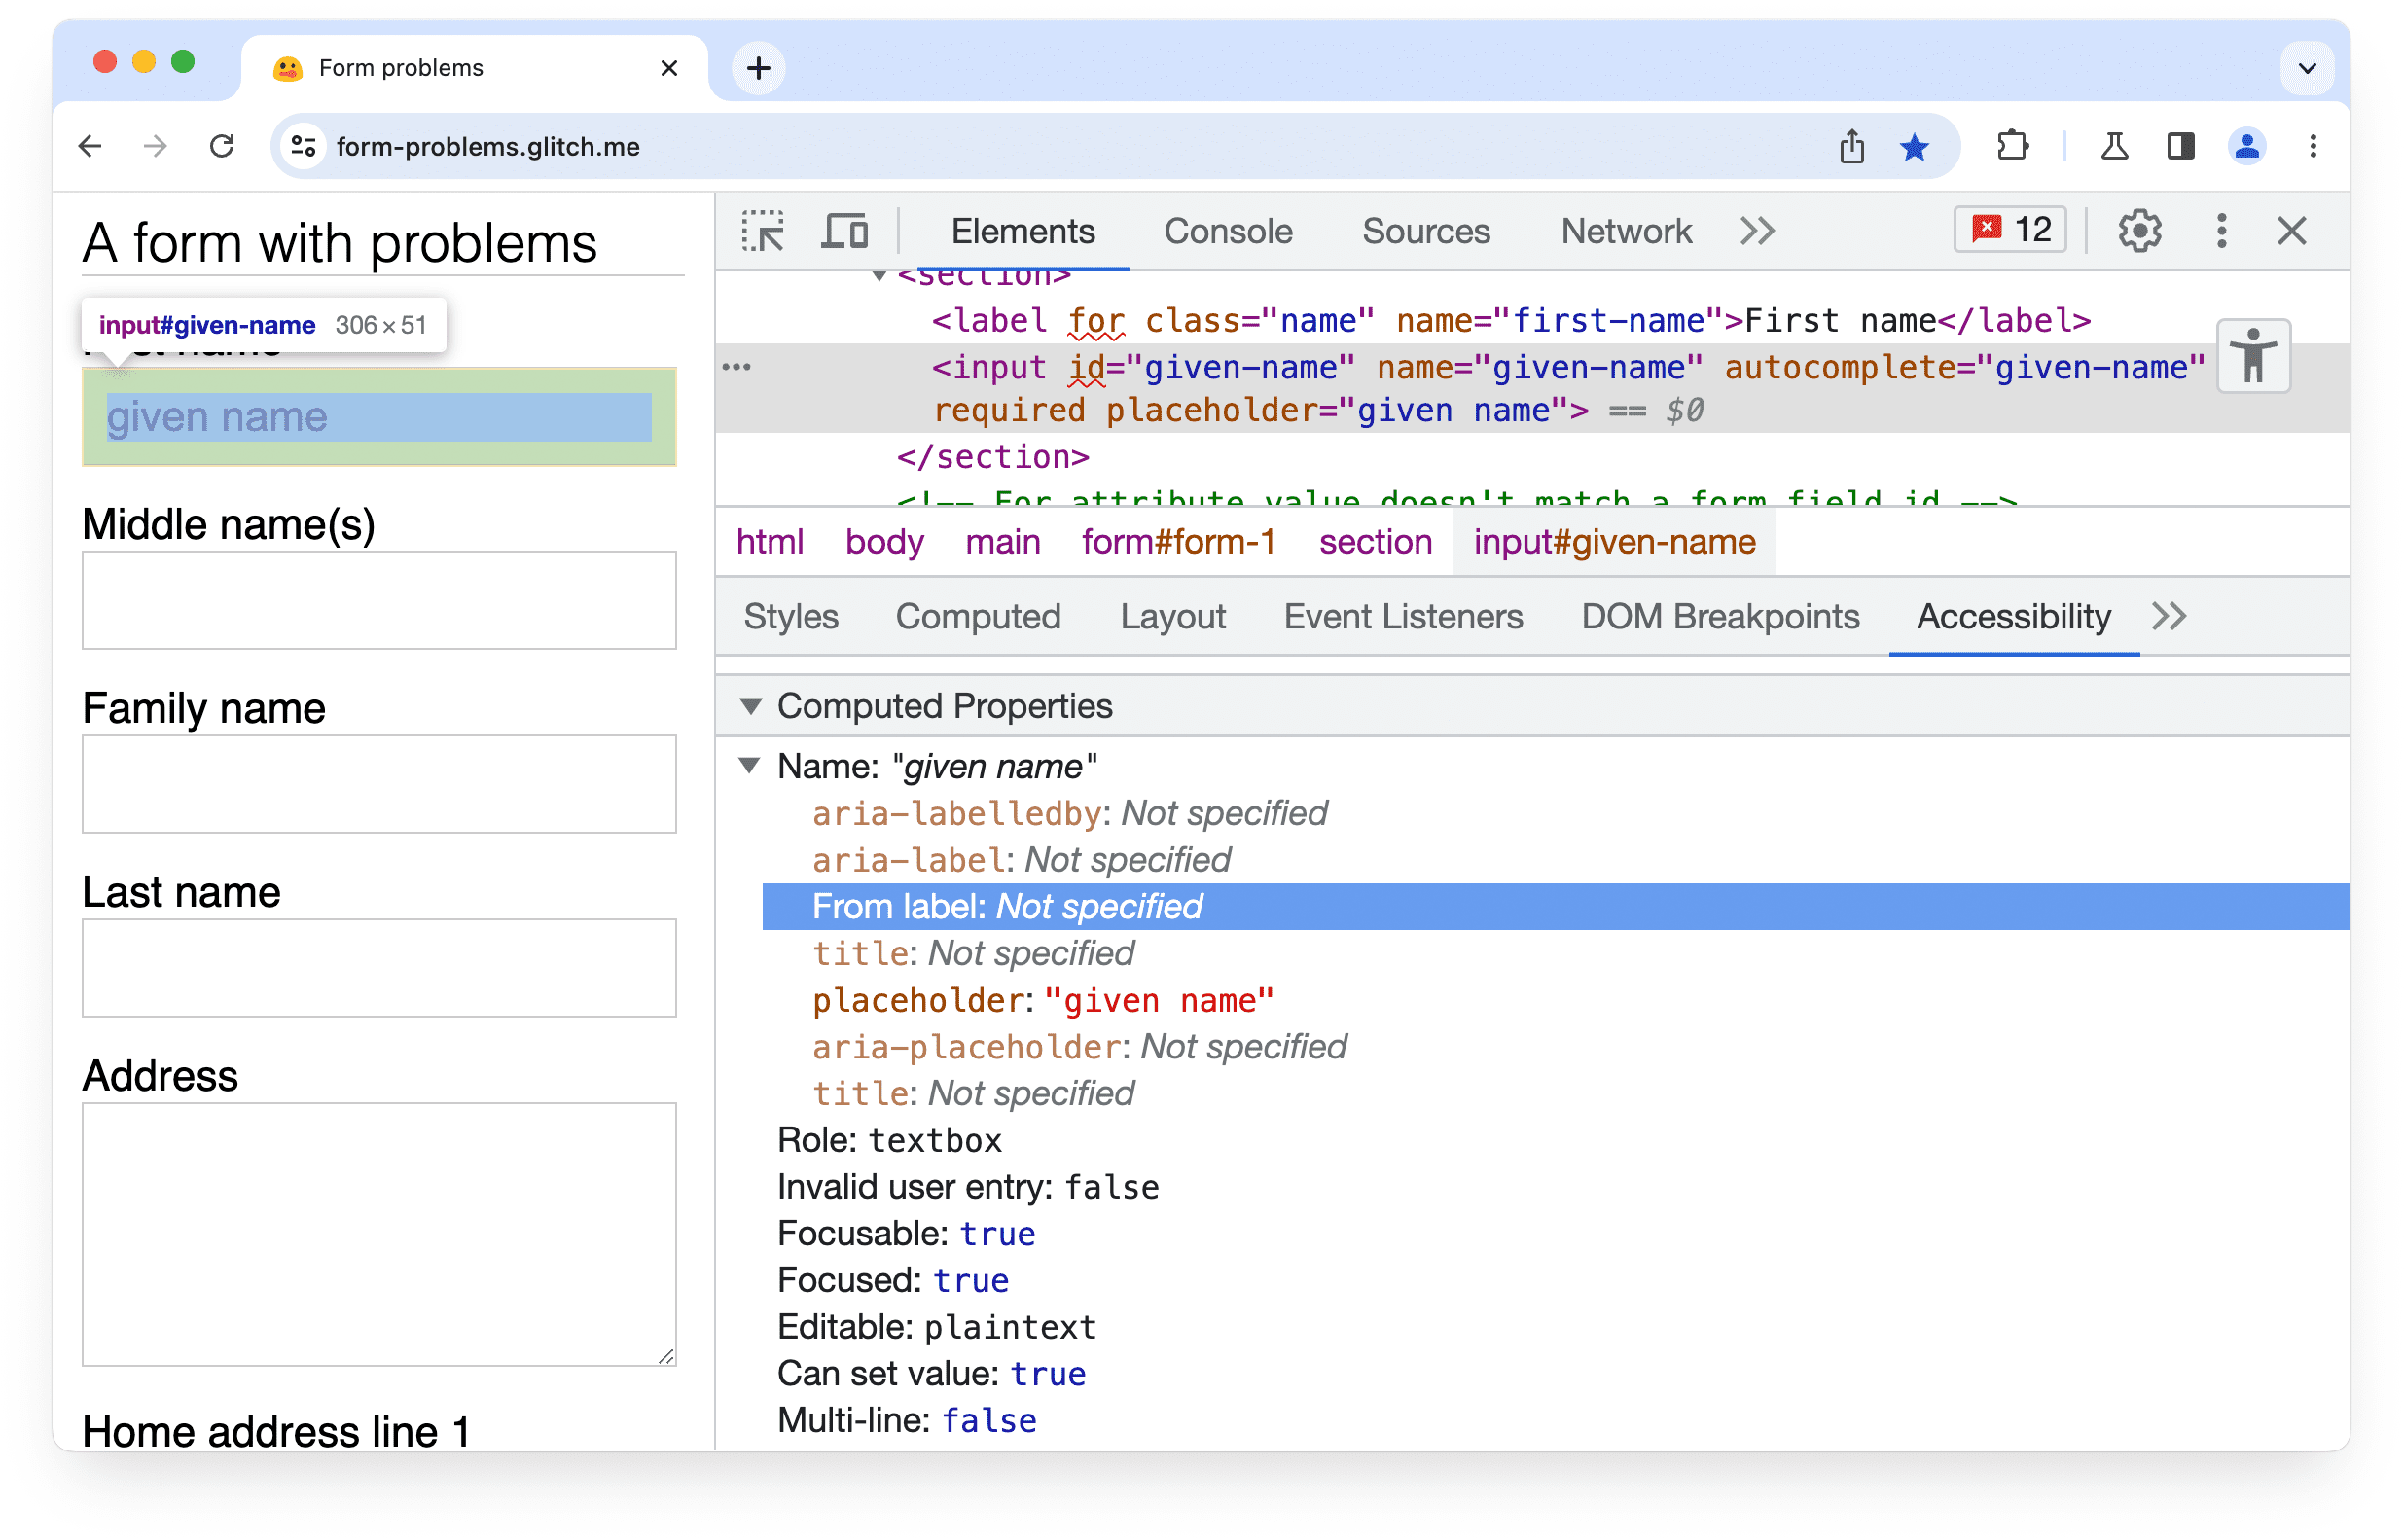 Chrome DevTools
सुलभता पैनल, जिससे पता चल रहा है कि फ़ॉर्म में मौजूद इनपुट एलिमेंट के लिए, मिलता-जुलता कोई लेबल या aria-labeledby एट्रिब्यूट नहीं मिला.